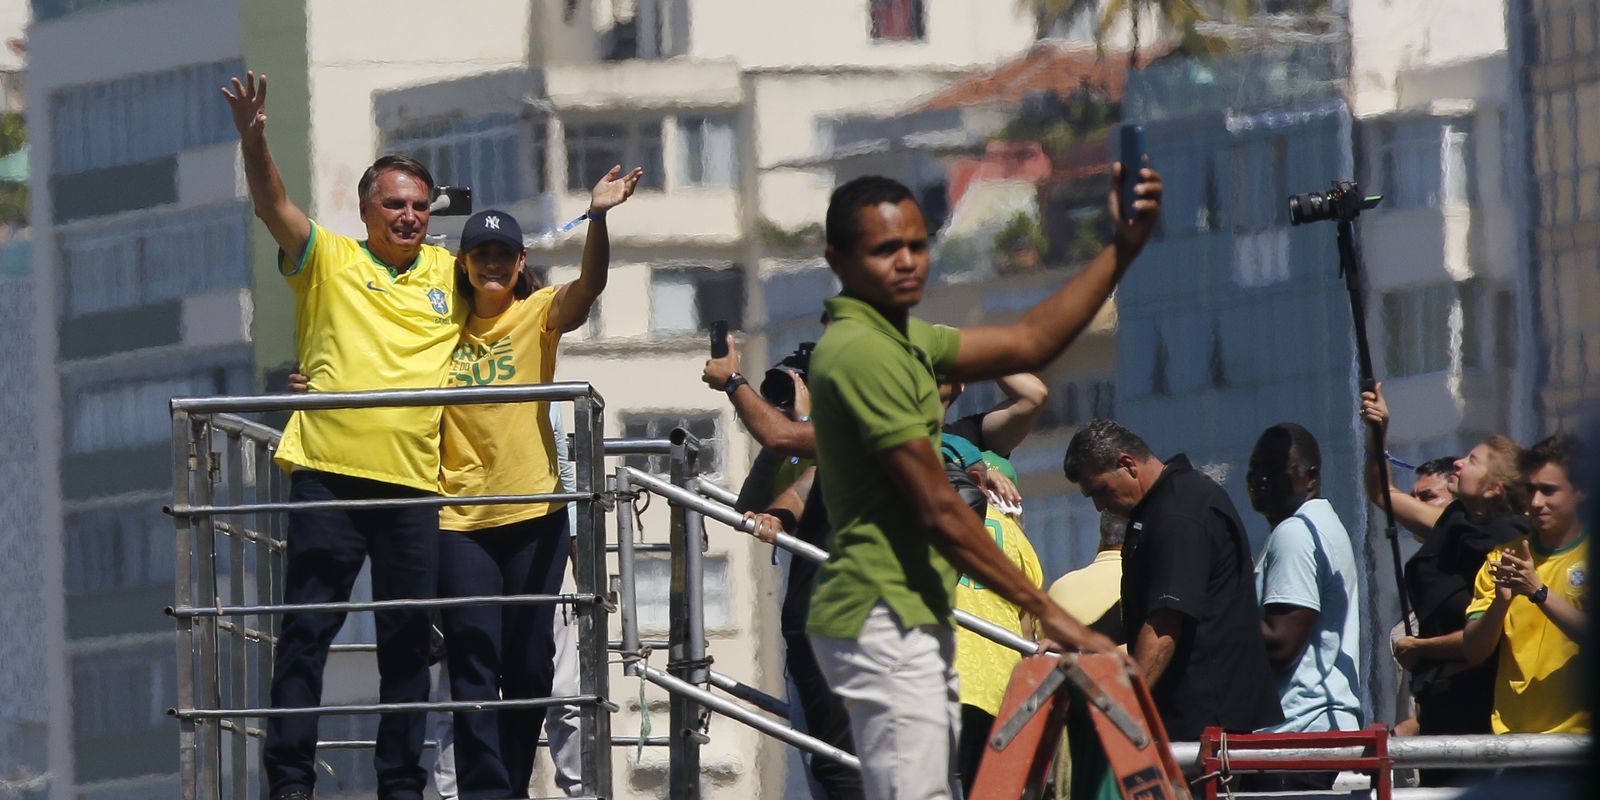 Apoiadores de Bolsonaro fazem ato público no Rio de Janeiro